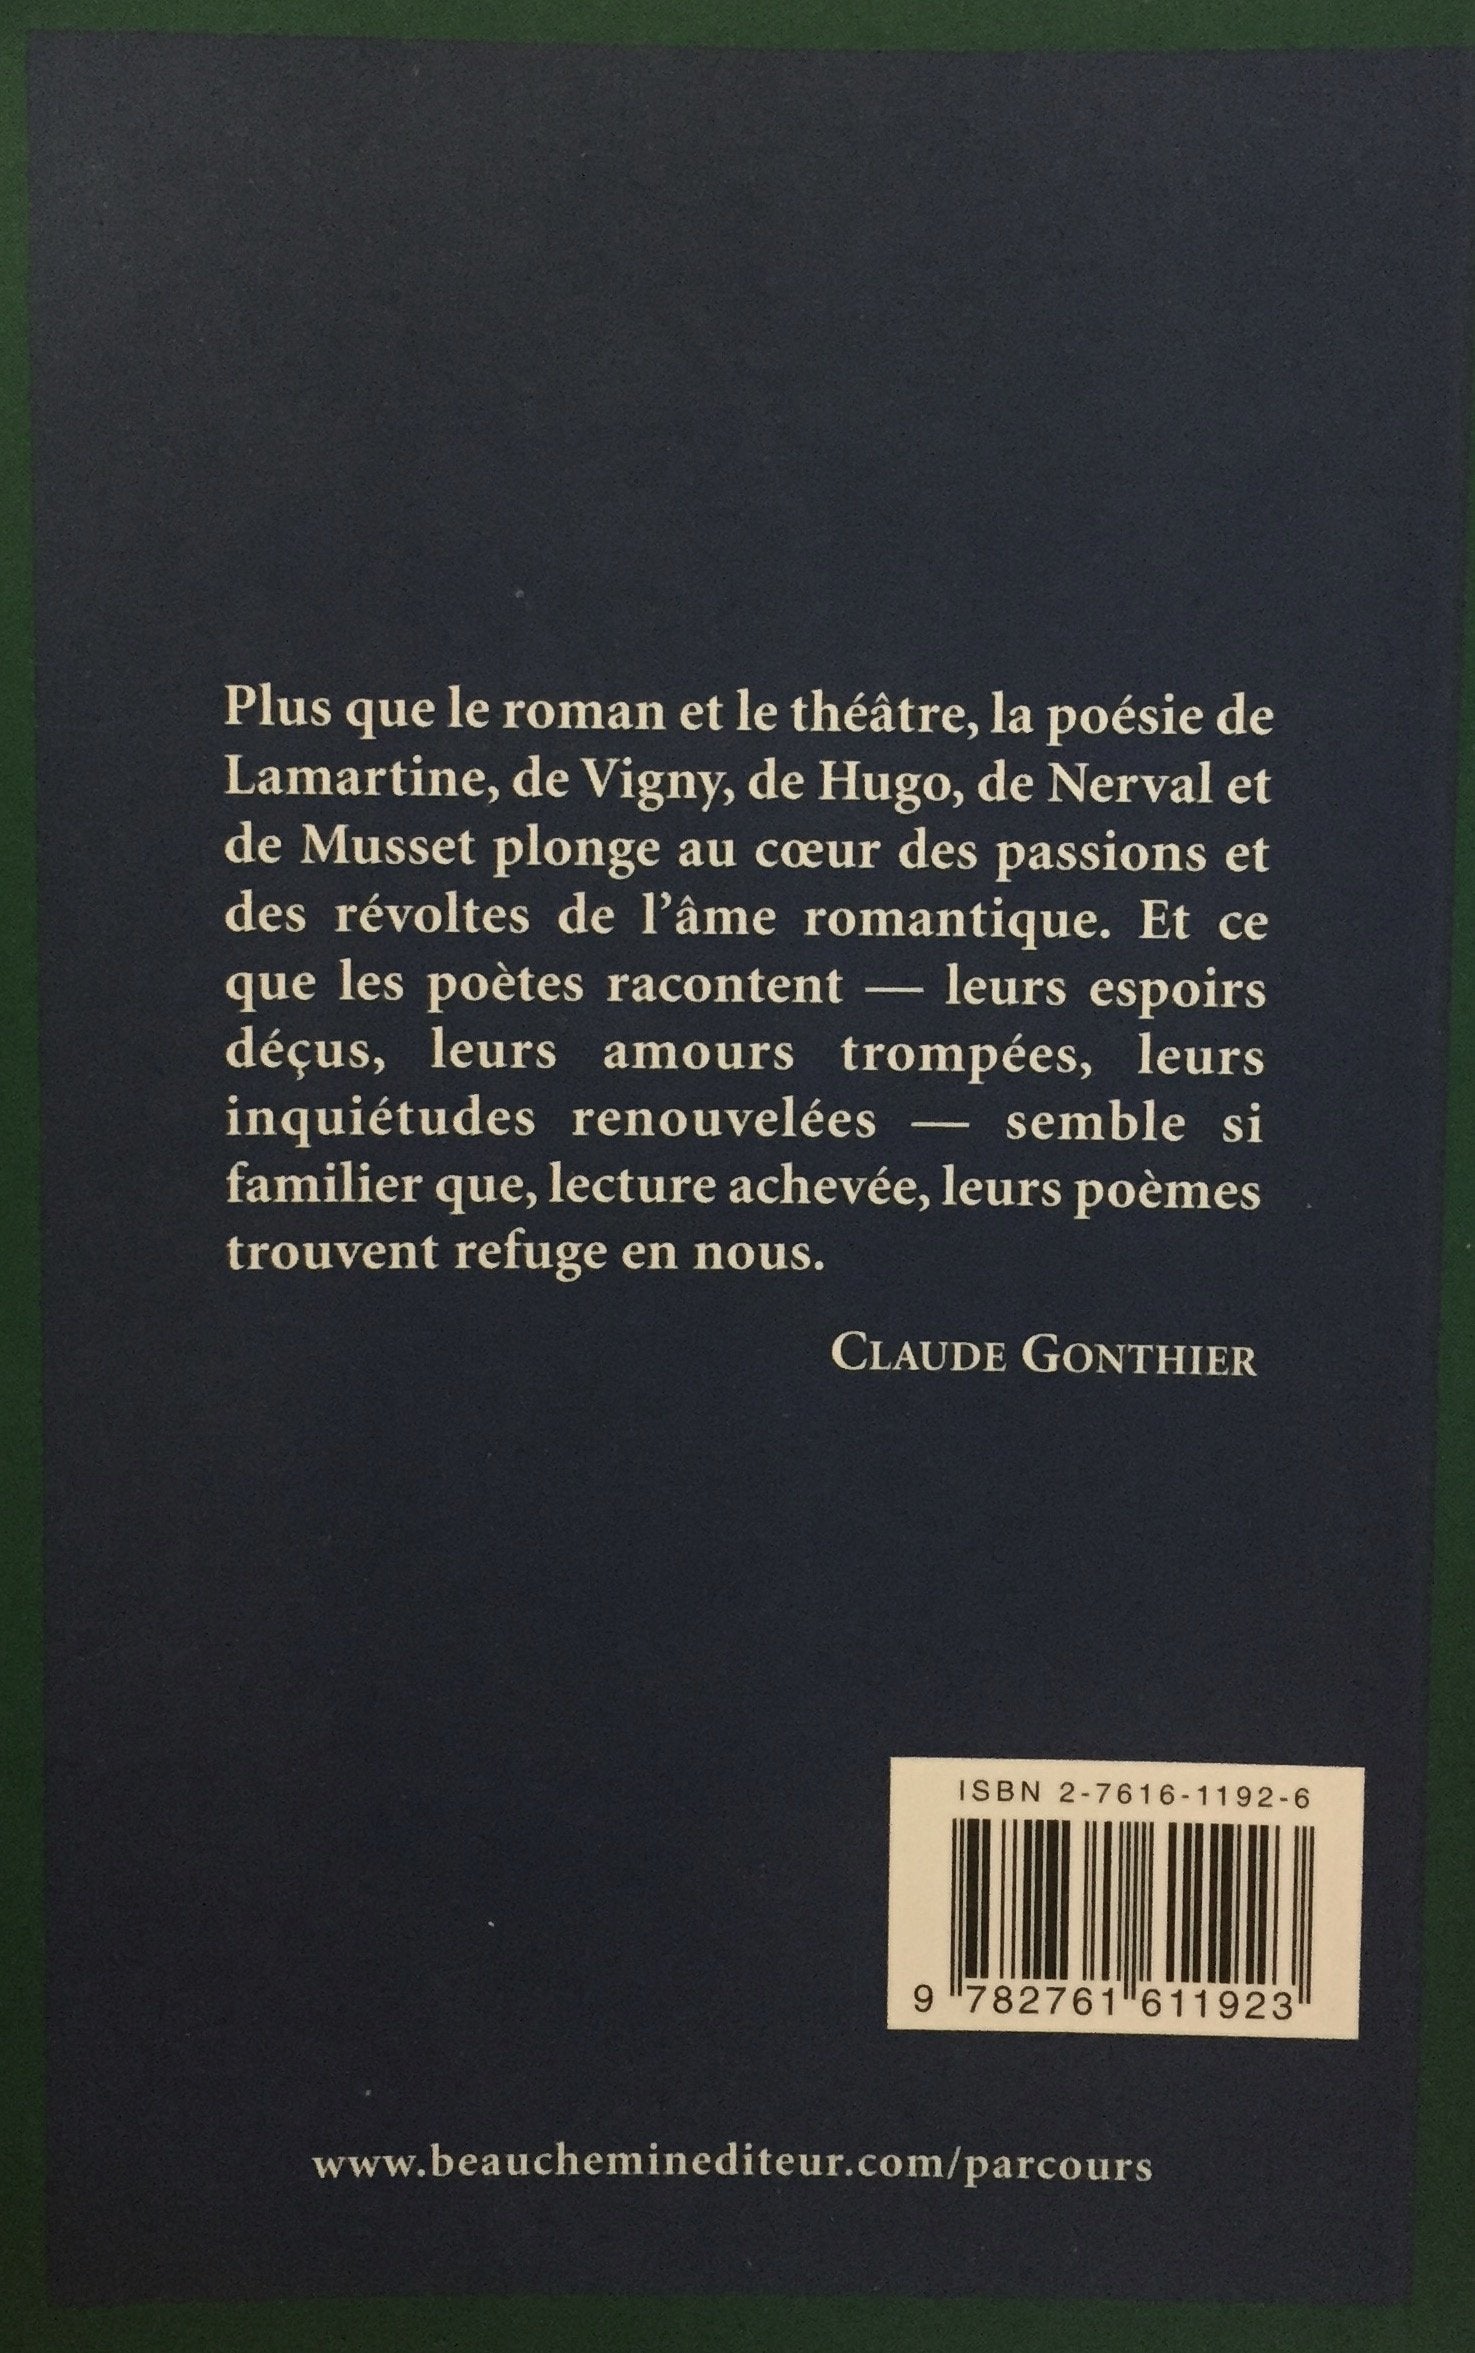 Parcours d'une Oeuvre : Choix de poème : Poètes romantiques du XIXe siècle (Hugo, Lamartine, Musset, Nerval, Vigny (Claude Gonthier)